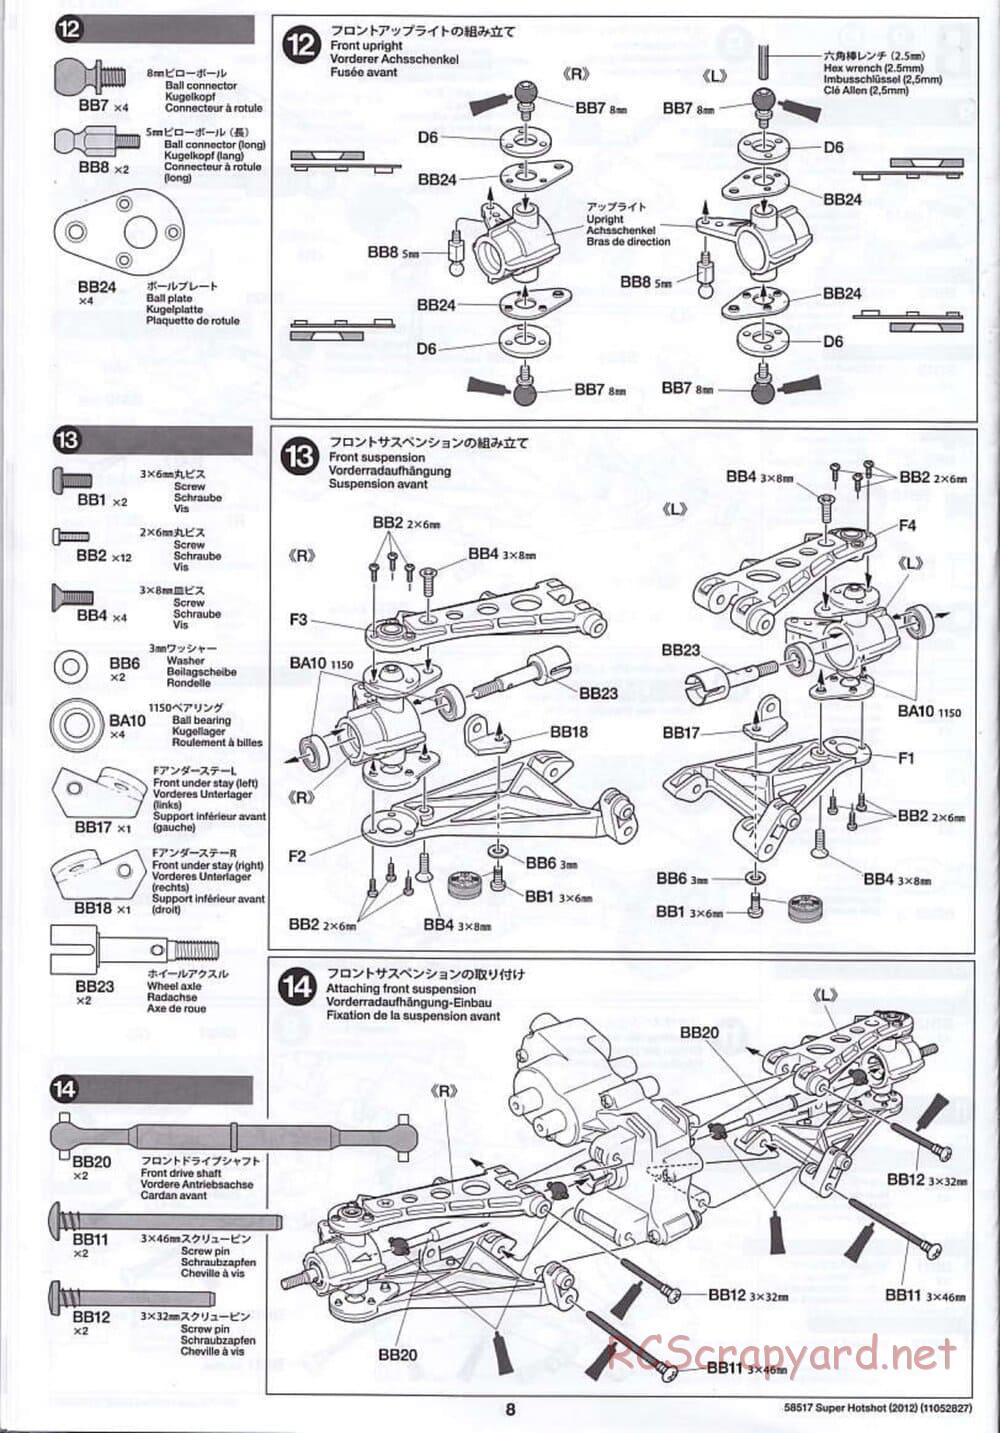 Tamiya - Super Hotshot 2012 - HS Chassis - Manual - Page 8